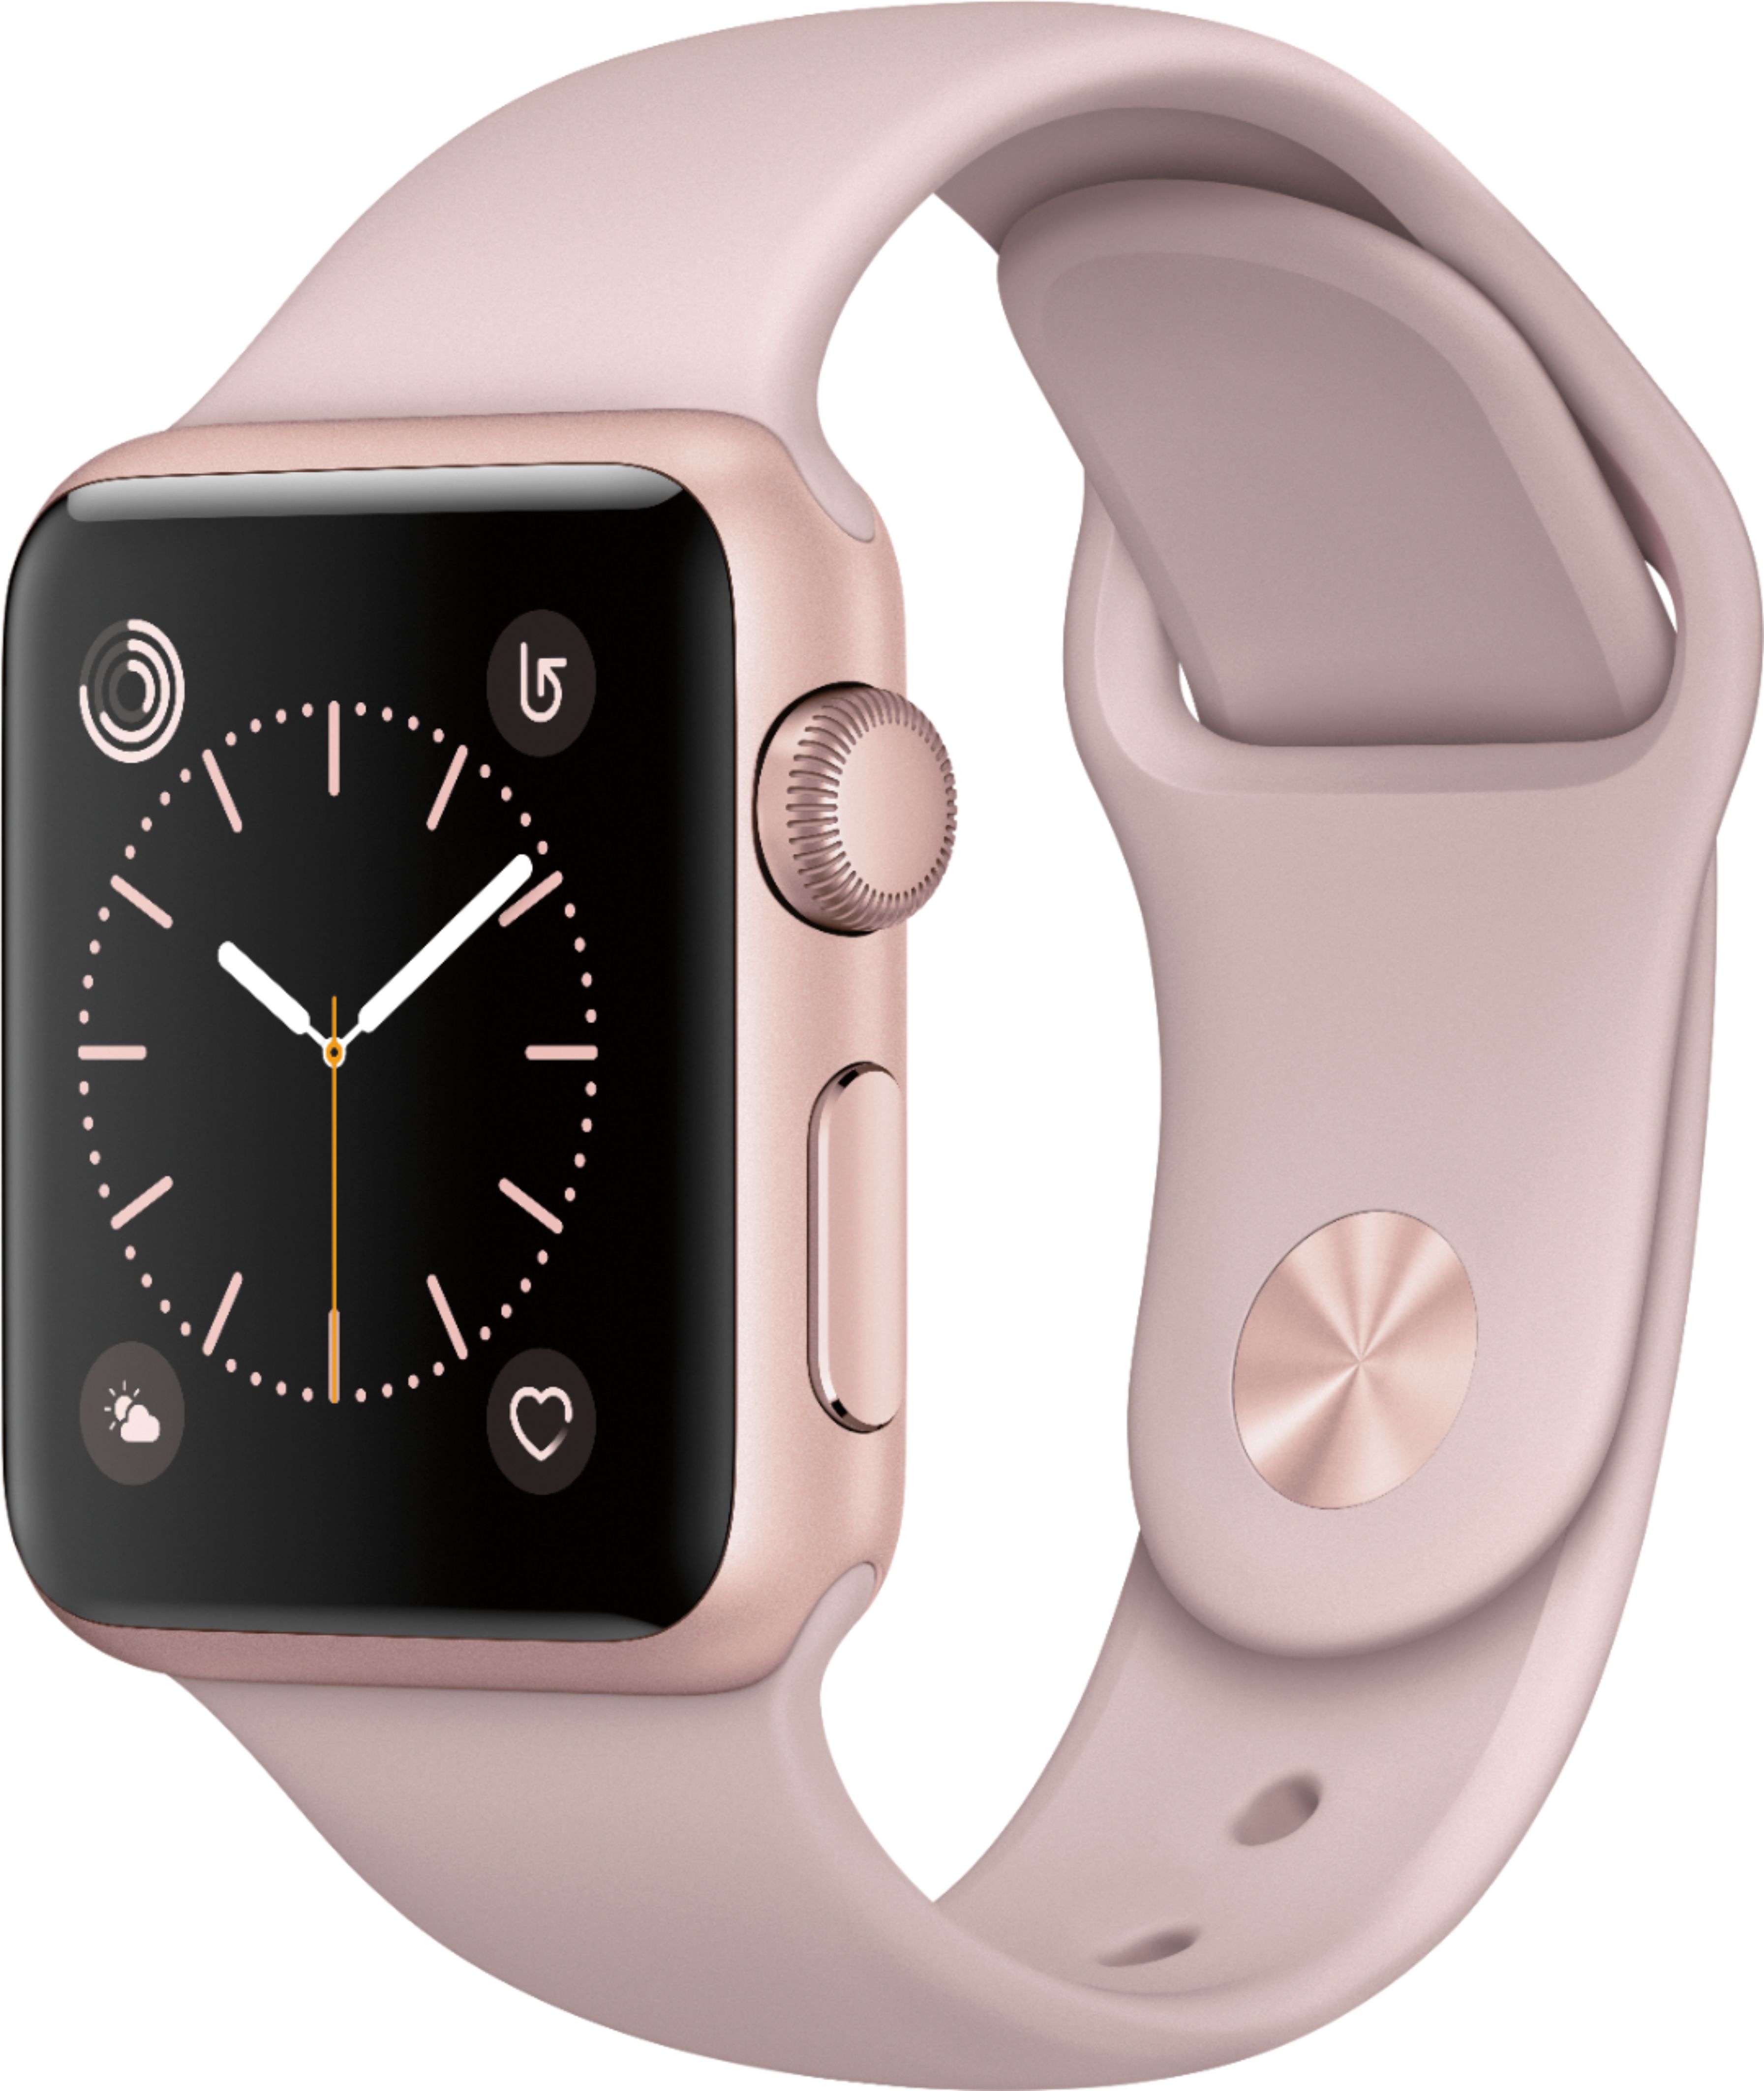 Best Buy: Apple Watch Series 1 42mm 